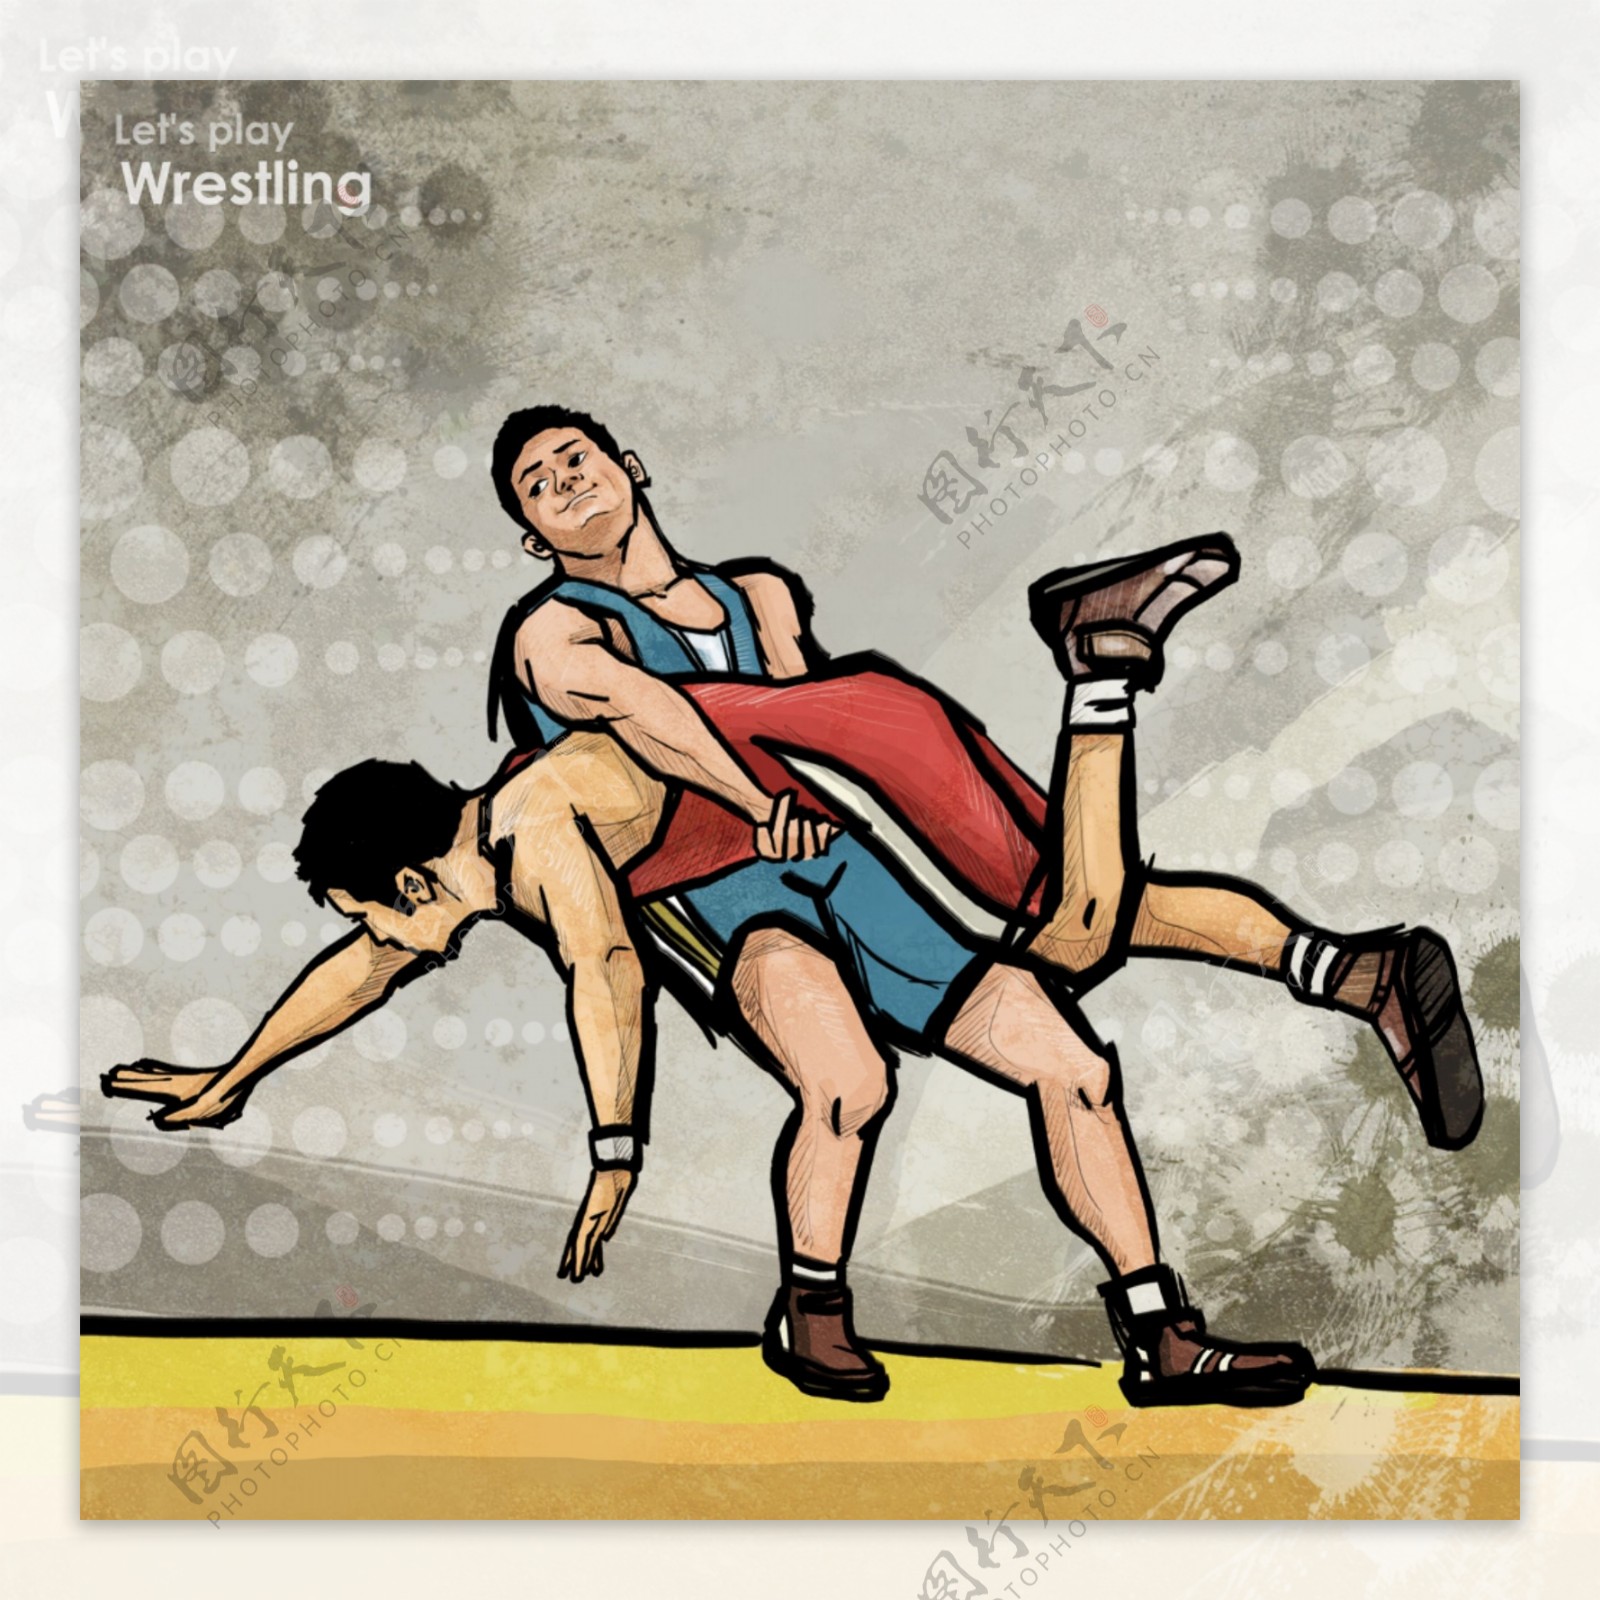 漫画摔跤柔道比赛图片